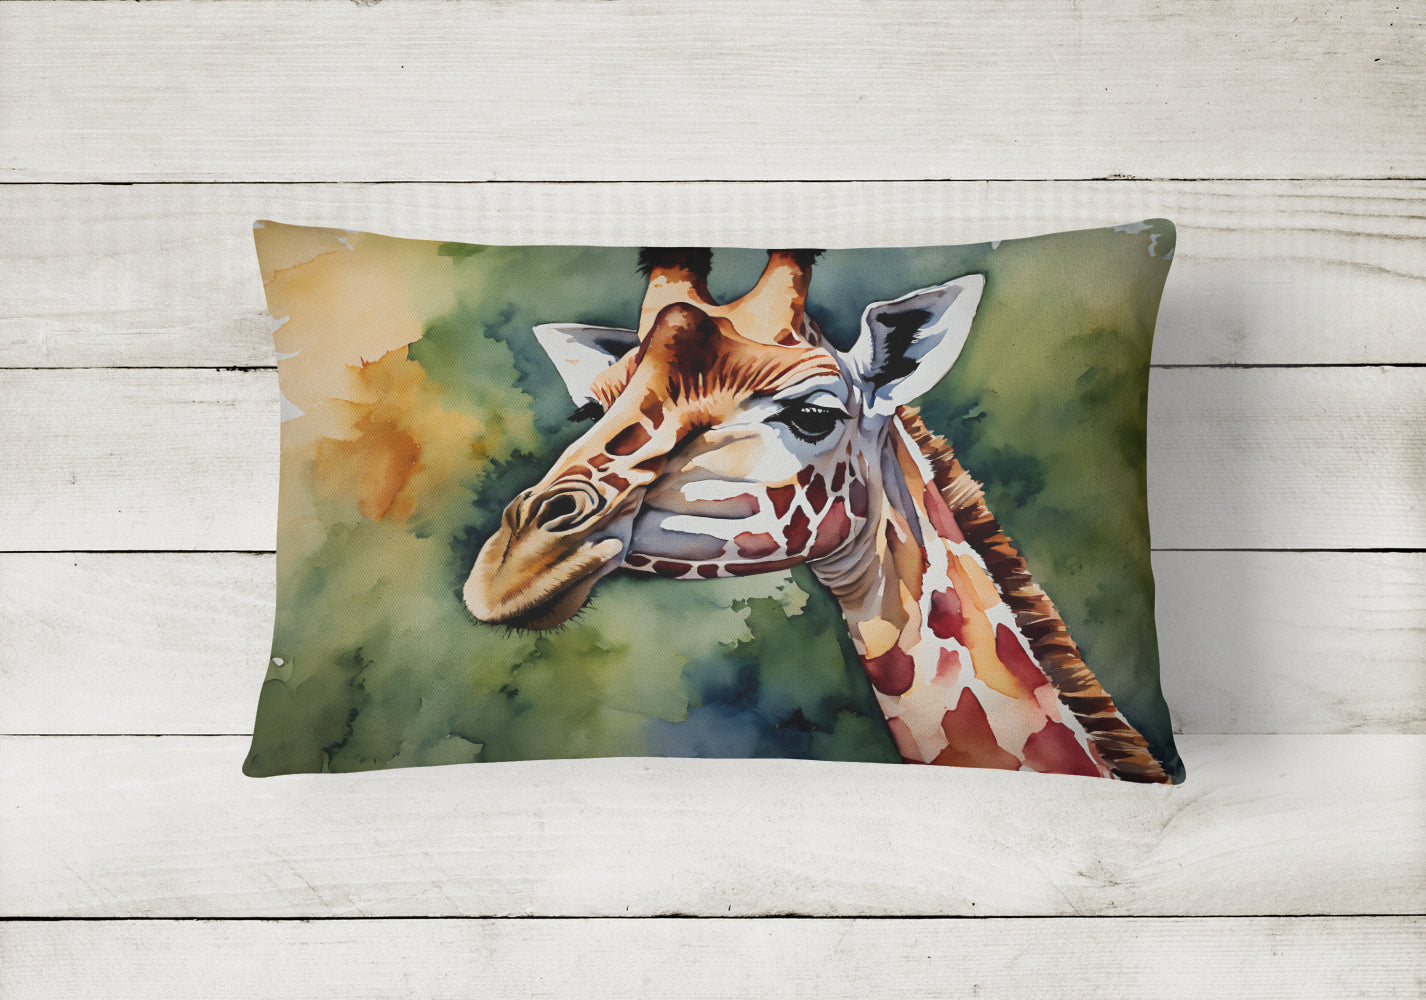 Giraffe Throw Pillow